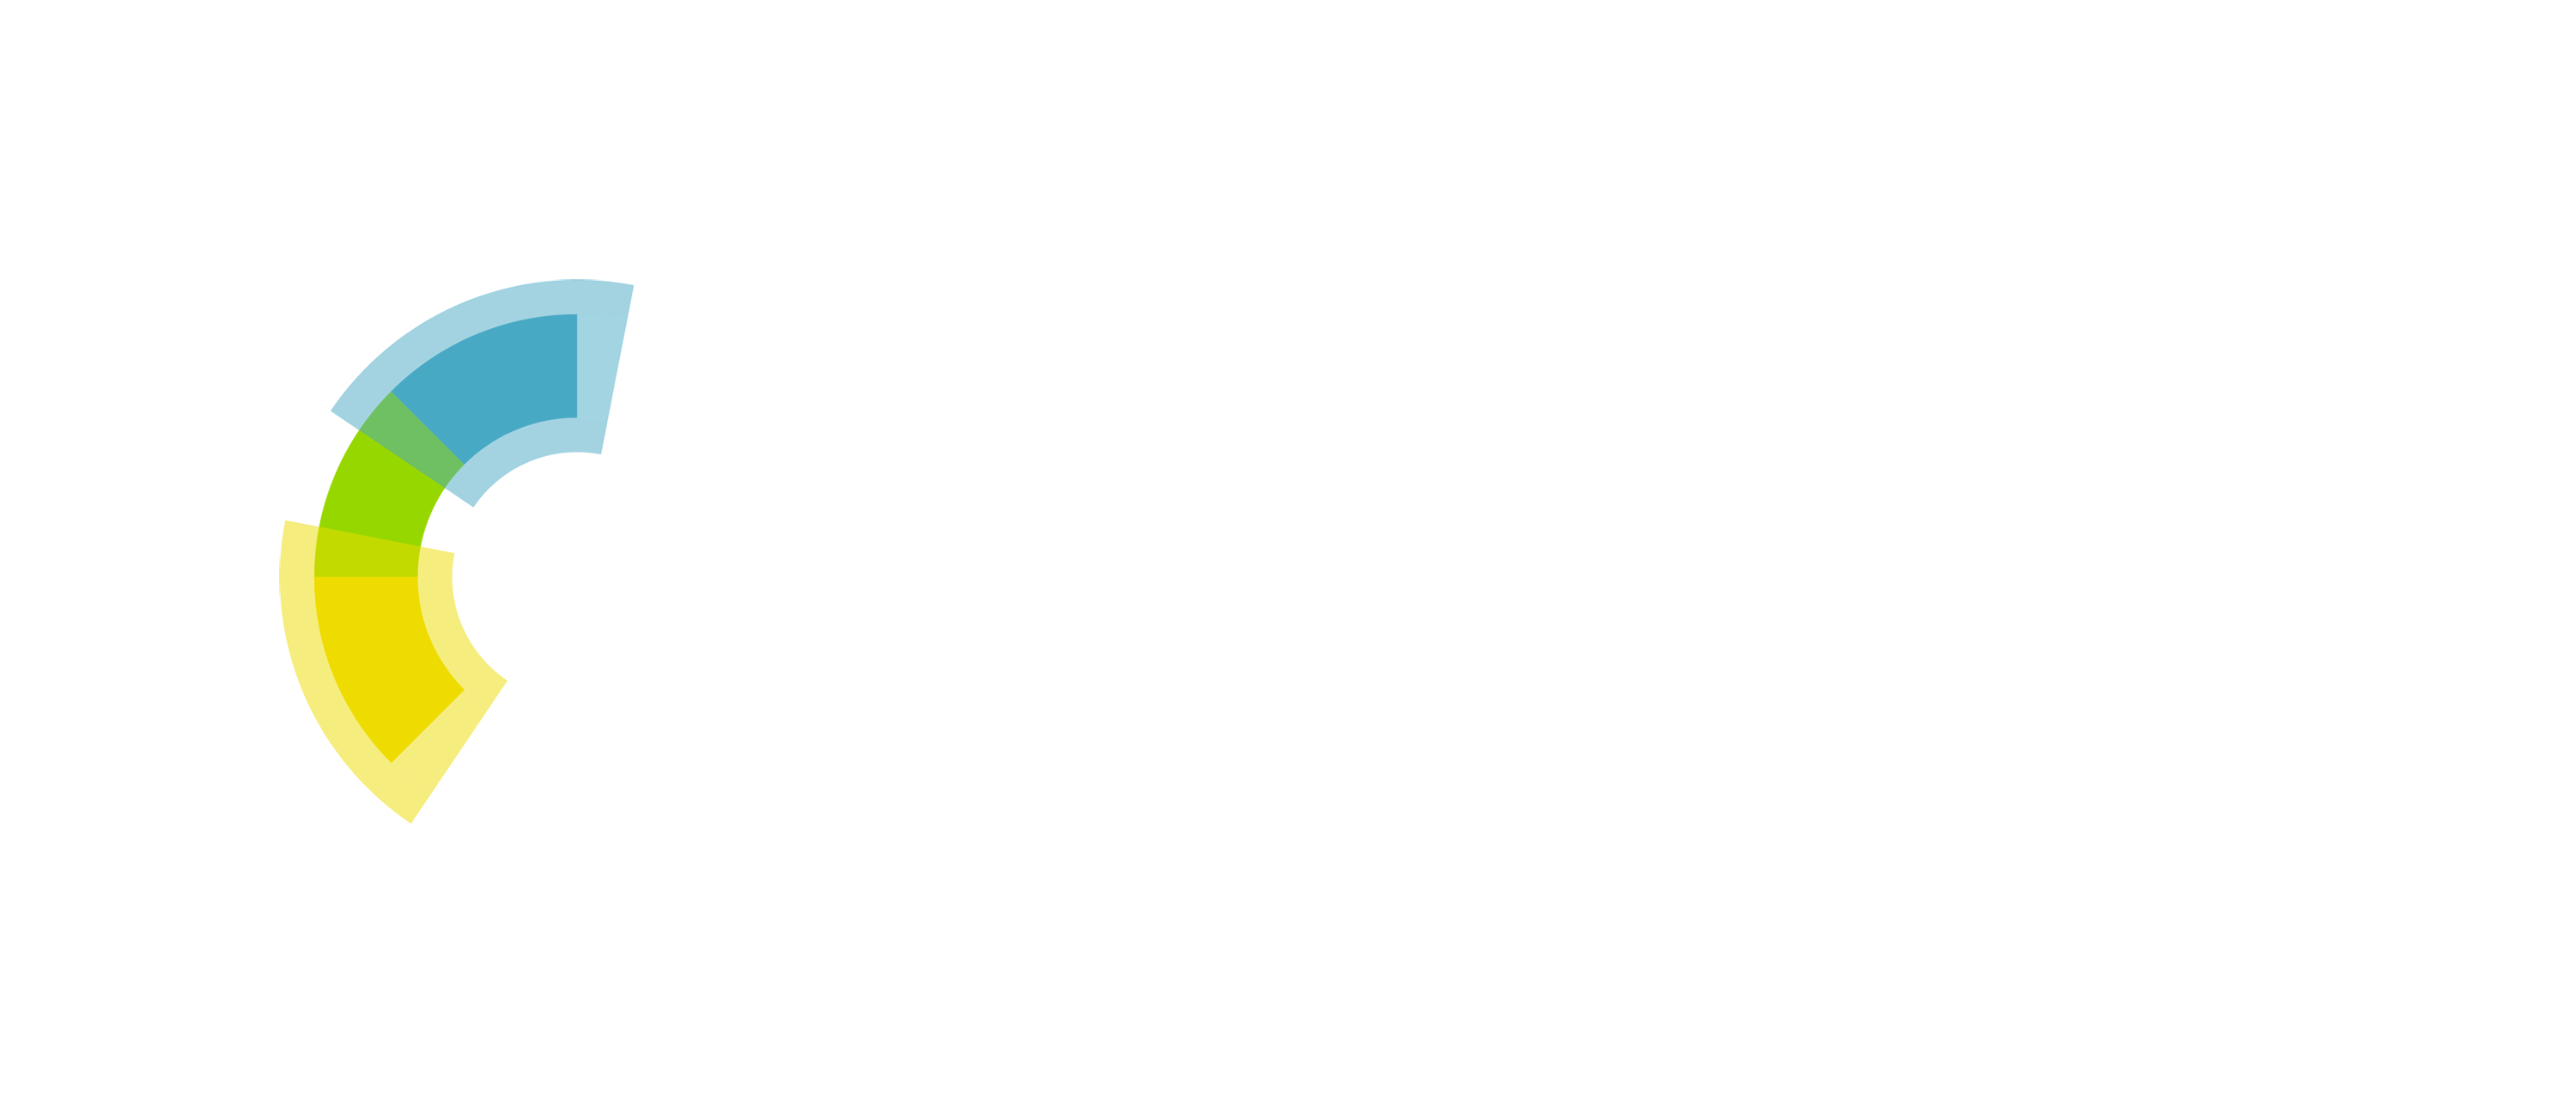 Royal Society Of Chemistry